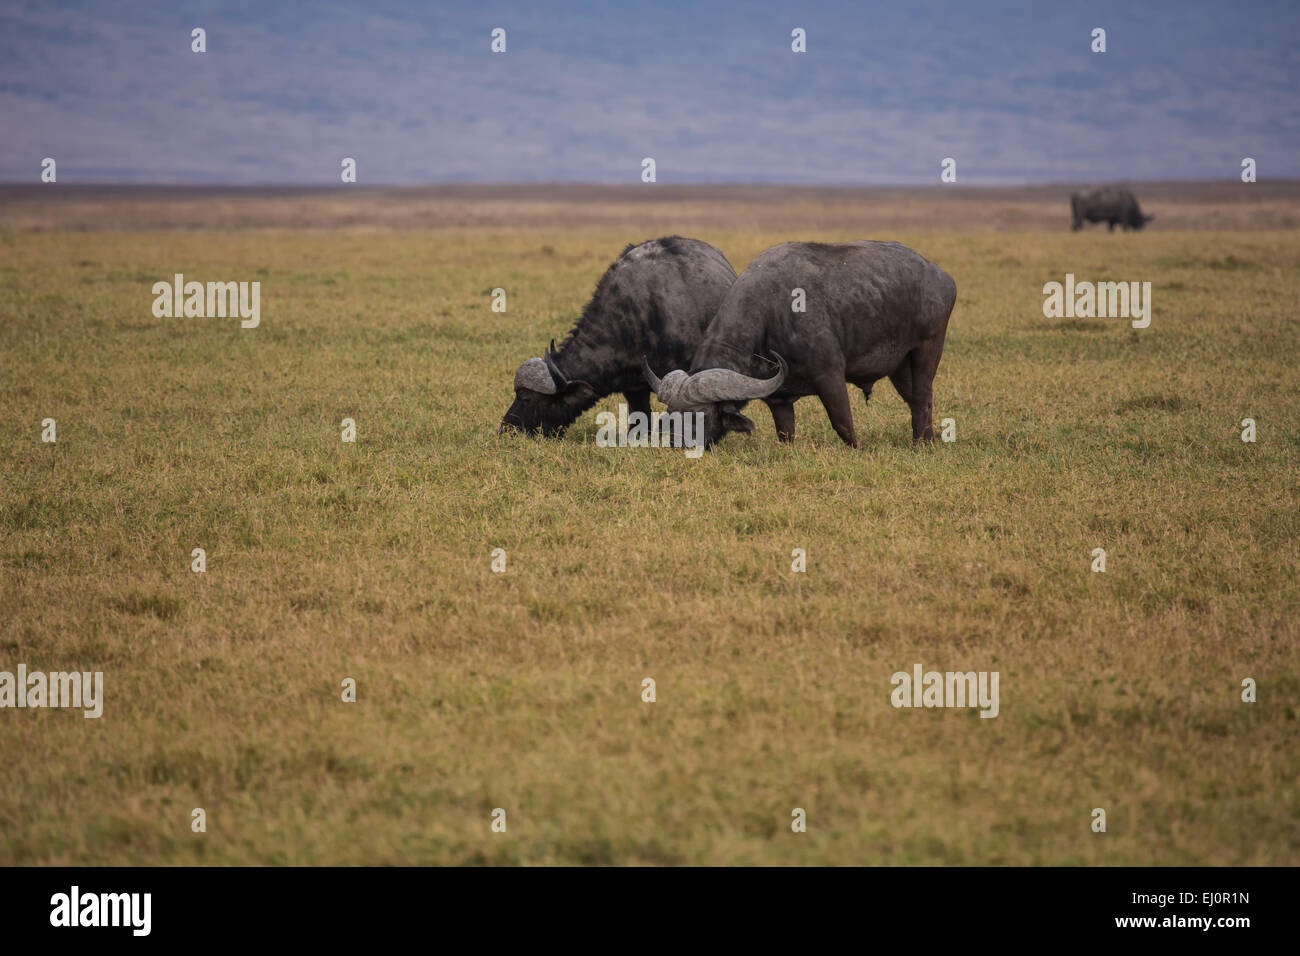 Africa, African buffalo, syncerus caffer, Ngorongoro, Conservation area, protective area, Ngorongoro crater, travel, savanna, mam Stock Photo